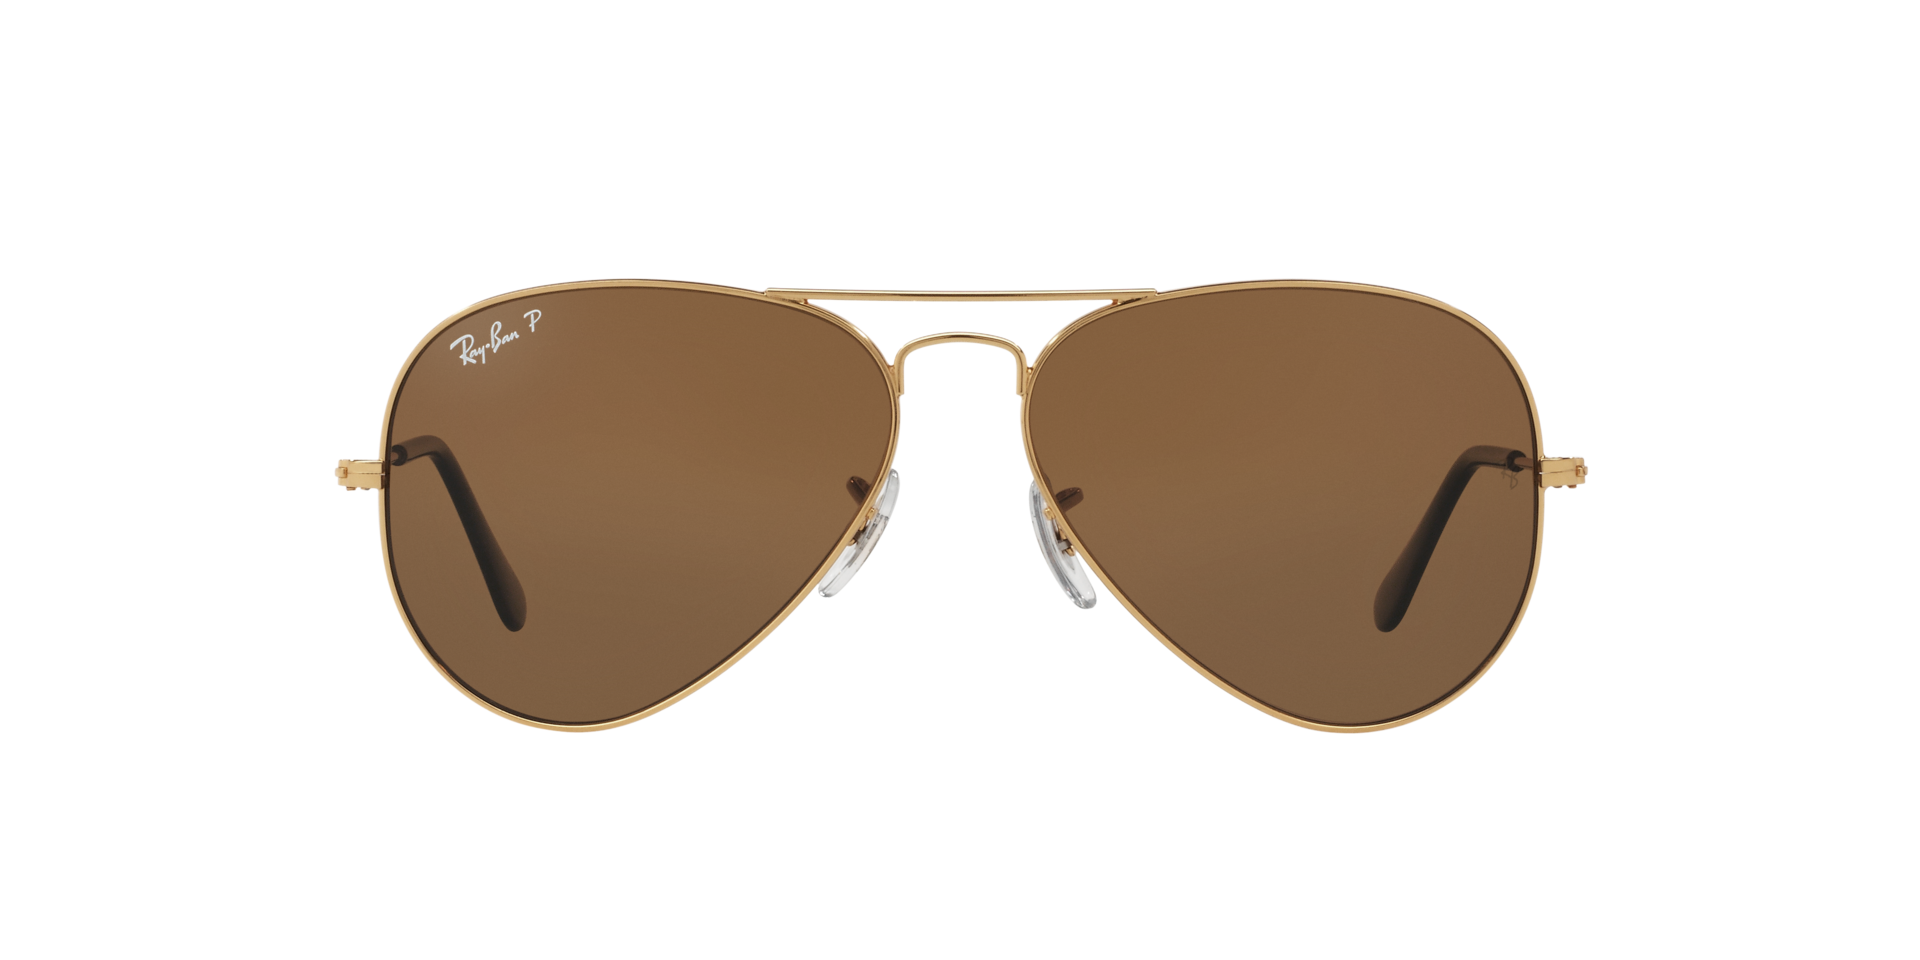 Polarized Large Retro Style Sunglasses Men & Women - EyeNeeds